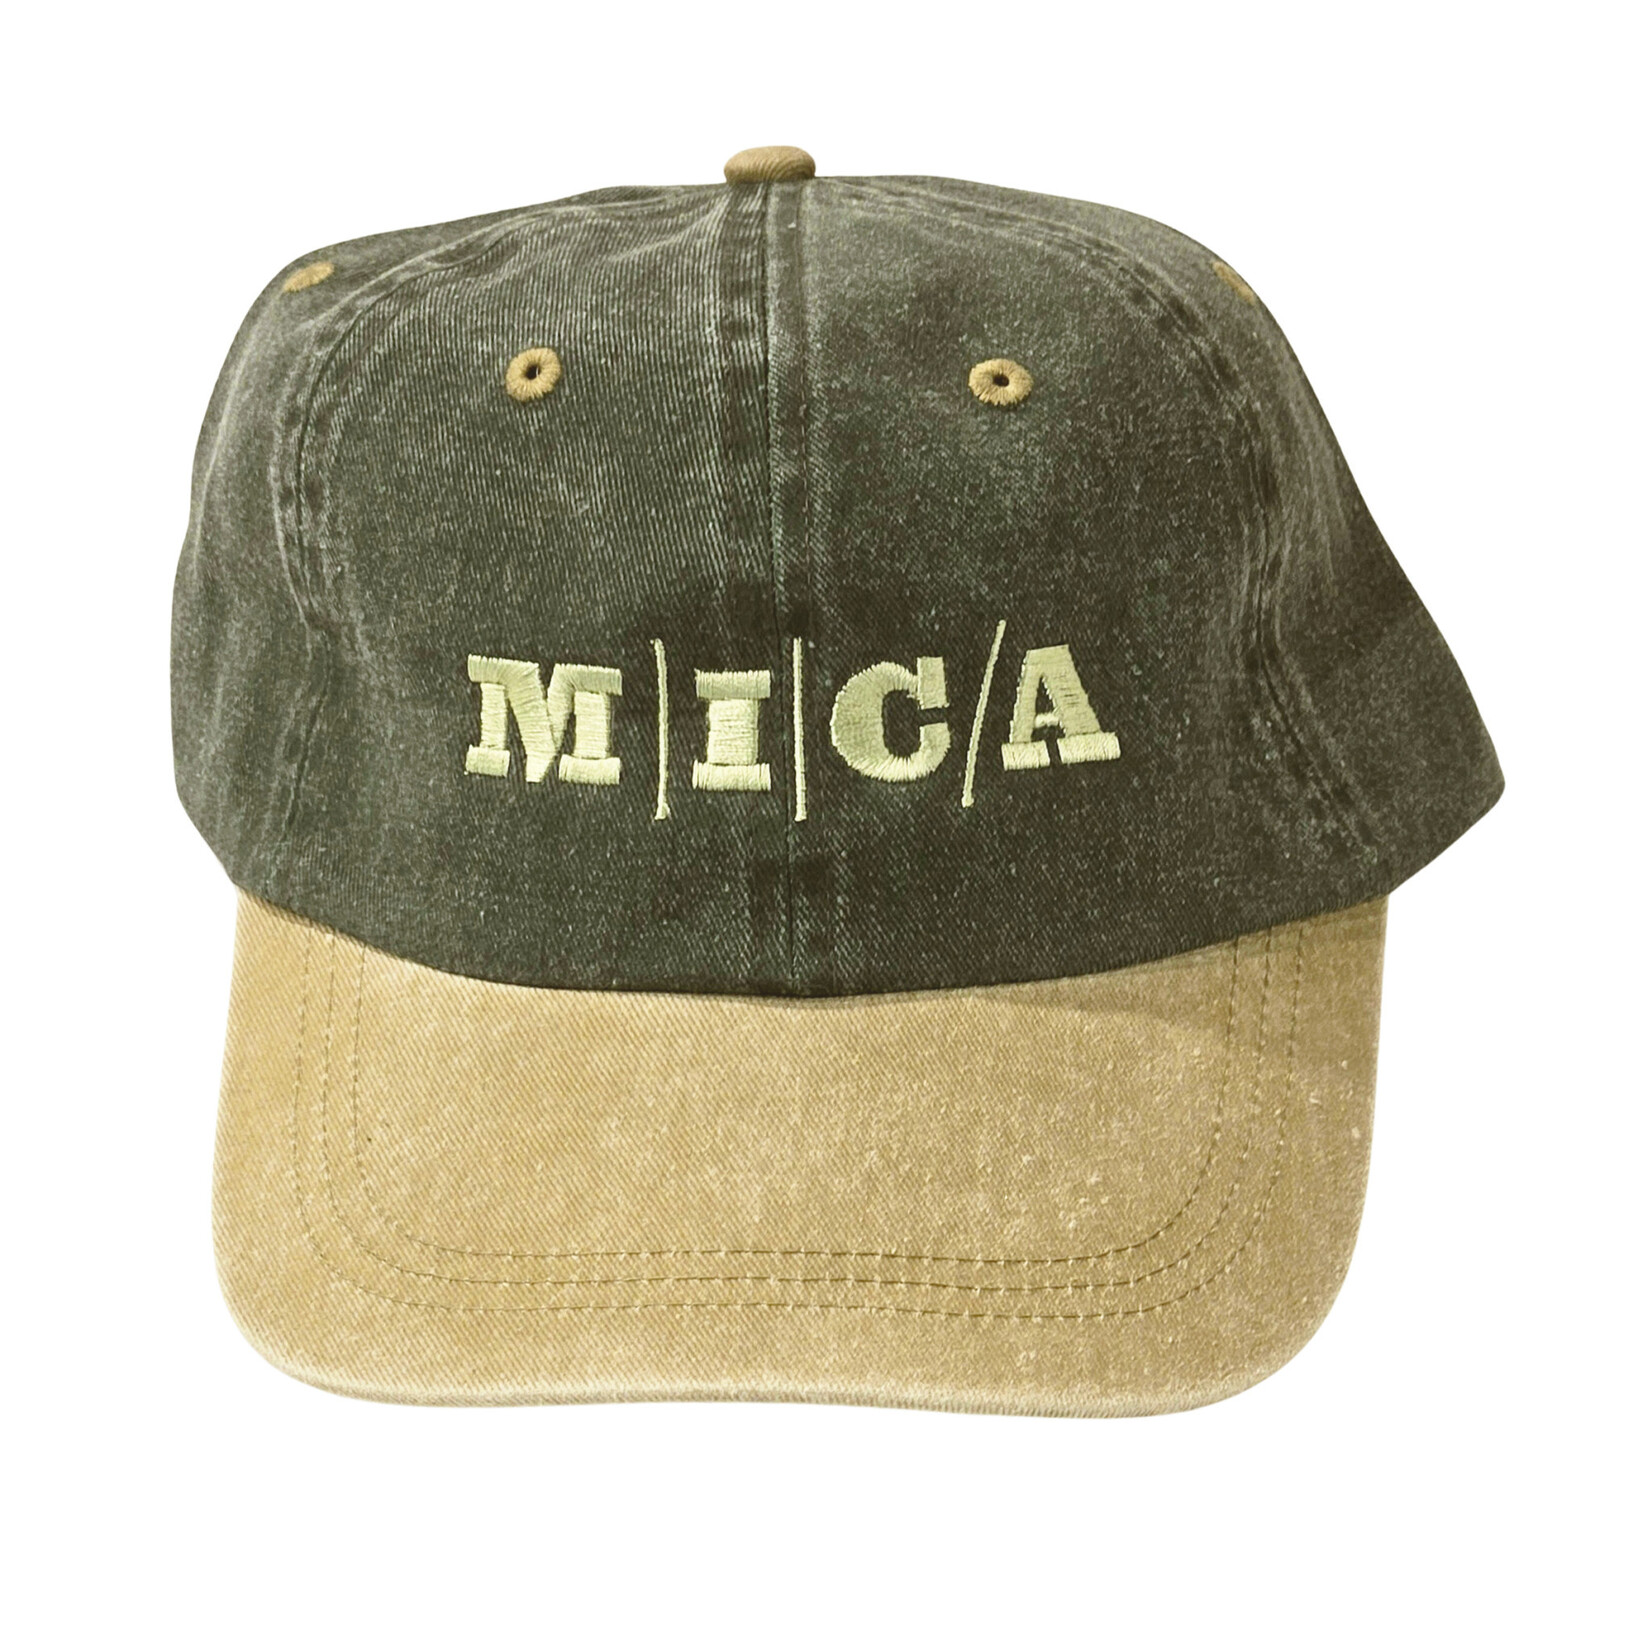 MICA Pigment Dyed Cap